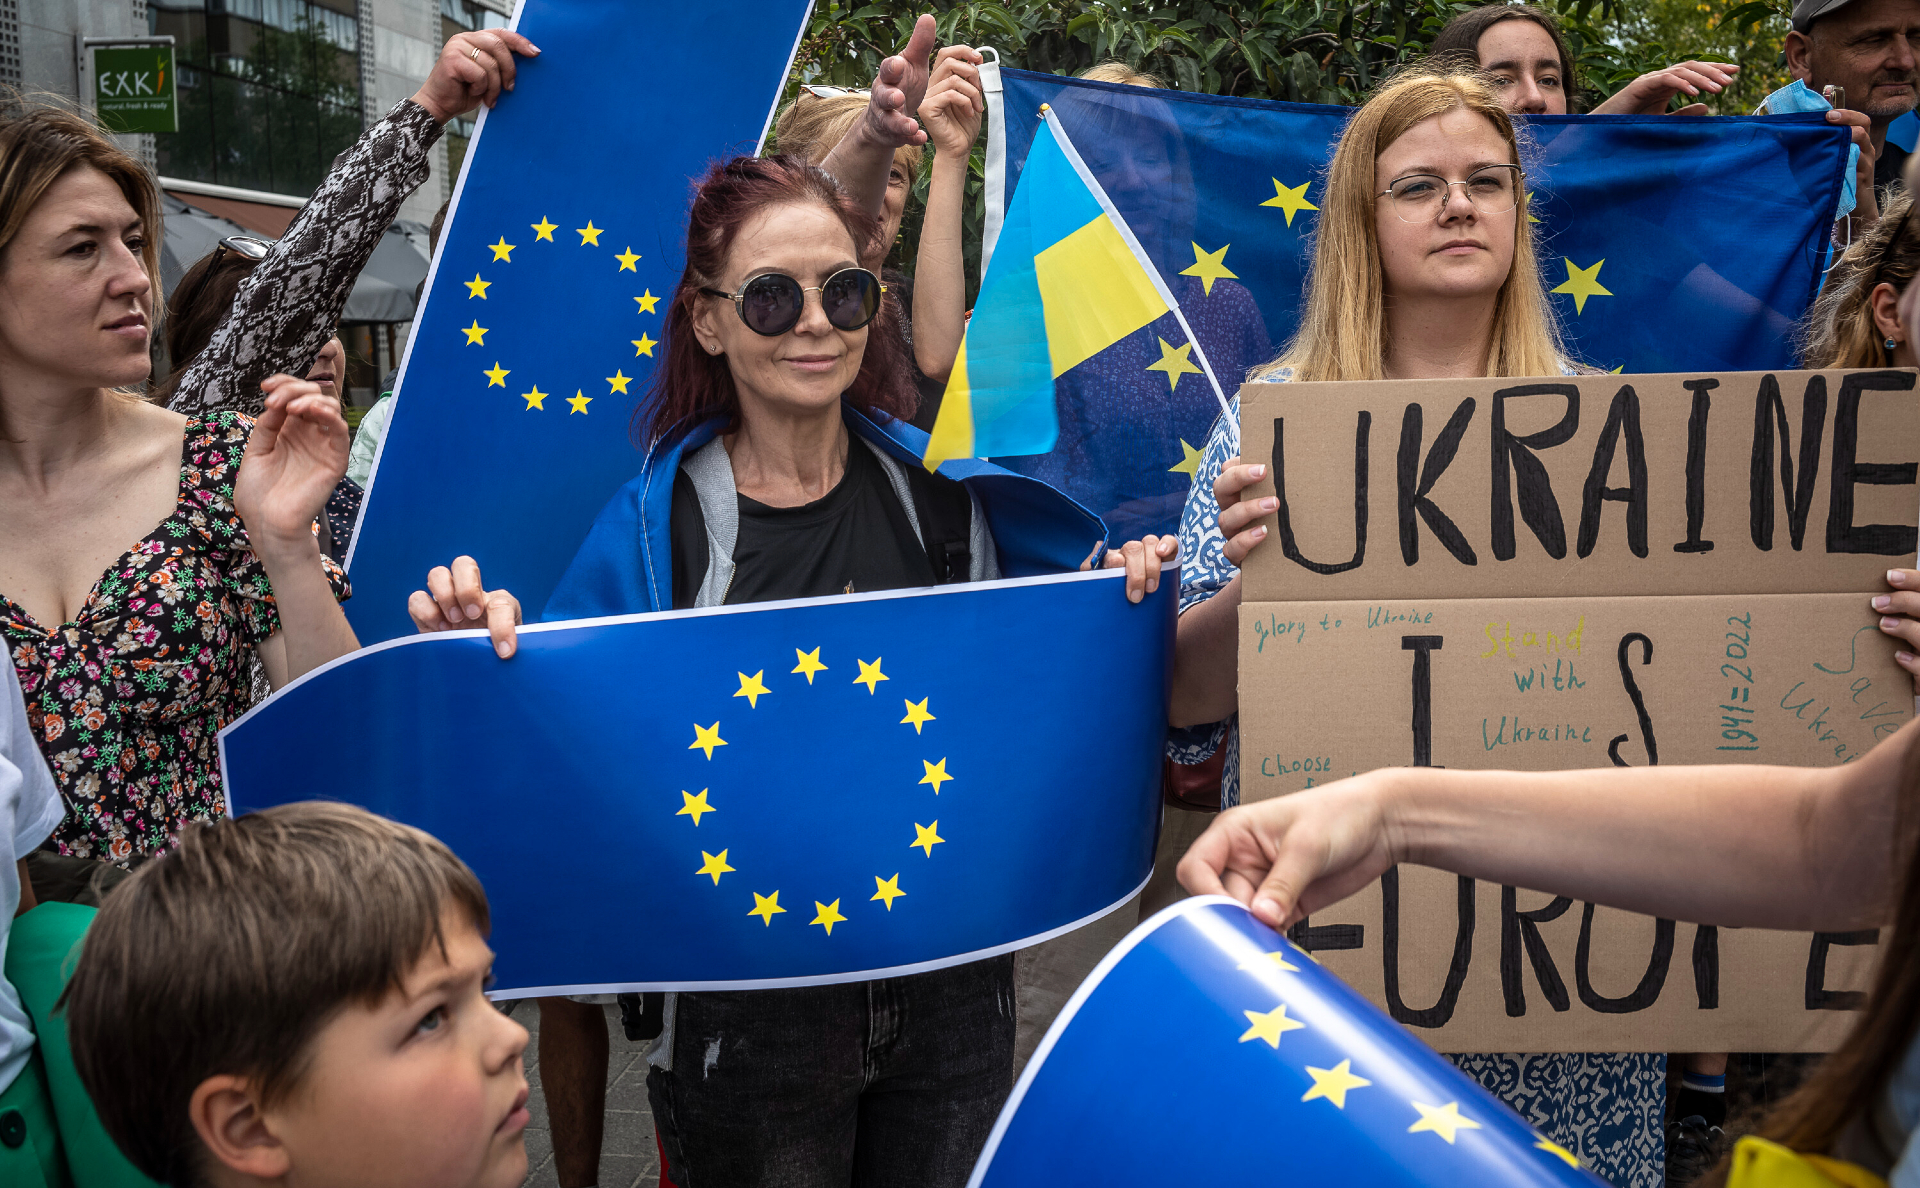 Ес украинцах. Украина Евросоюз. Вступление в ЕС. Украина против ЕС. Украина вступила в Евросоюз.